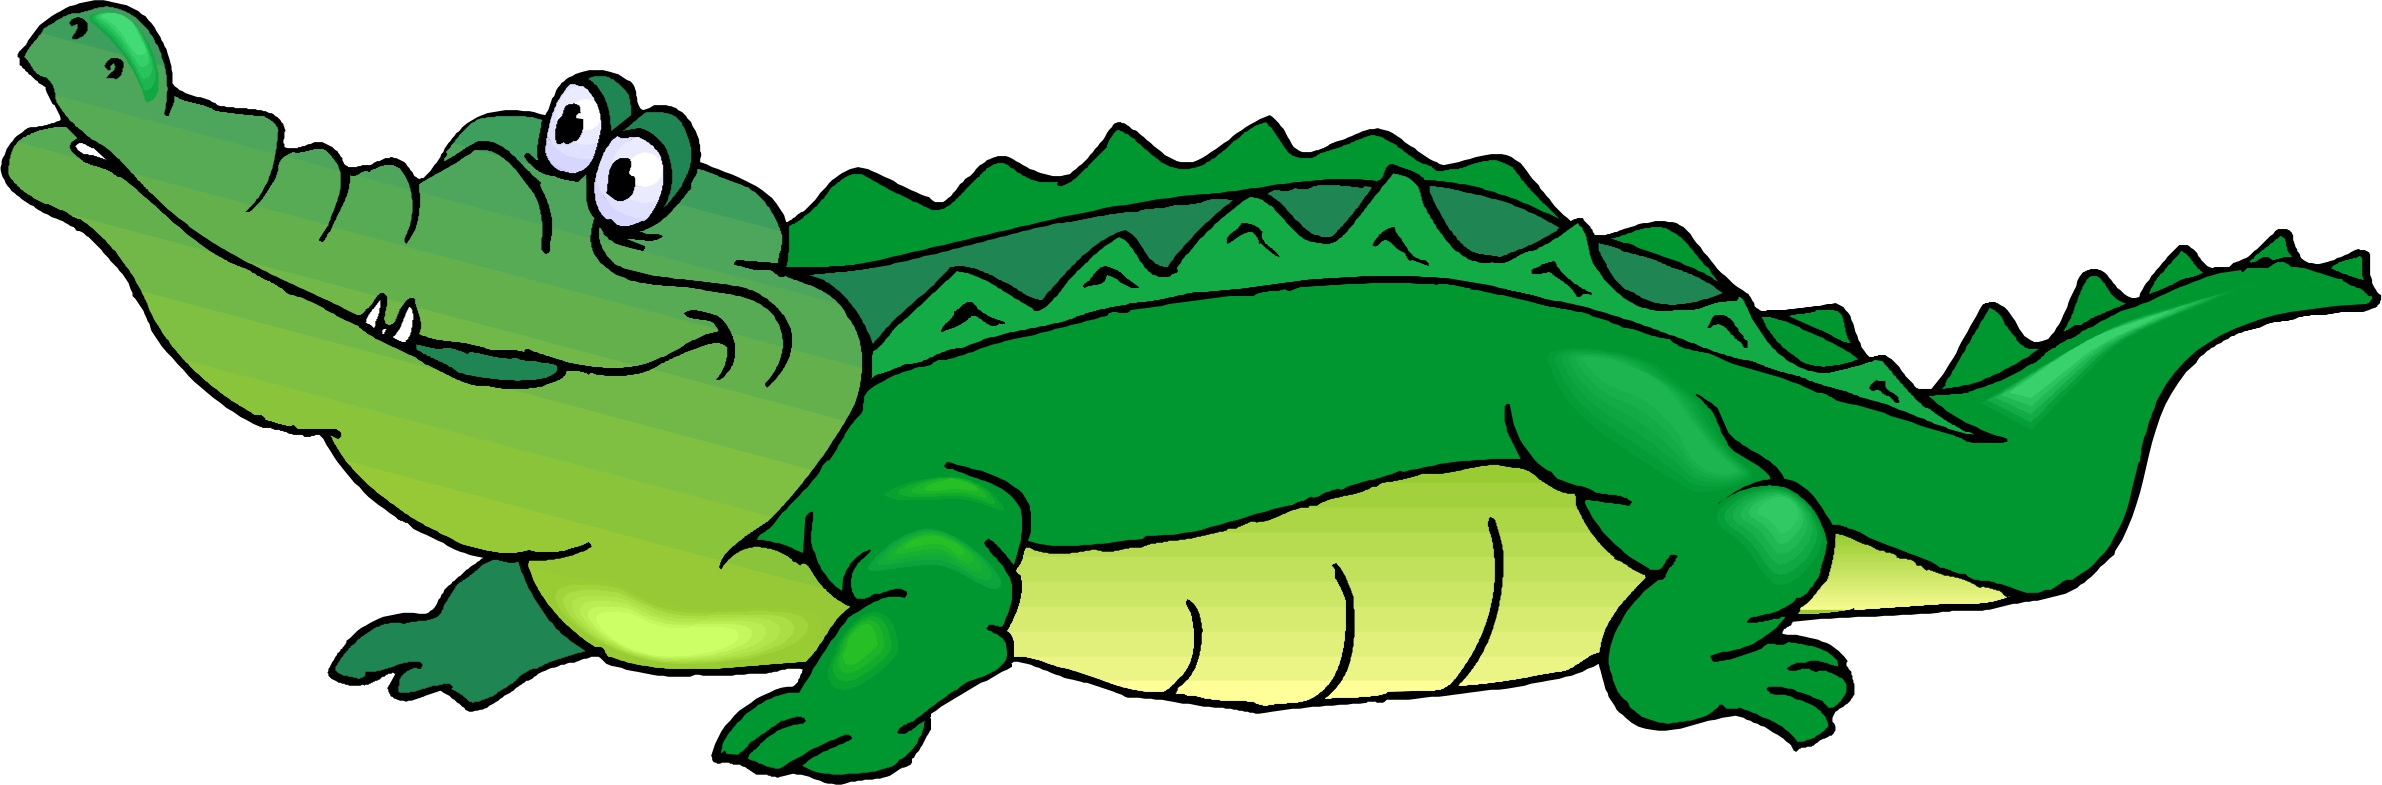 Pictures Of Cartoon Alligators 